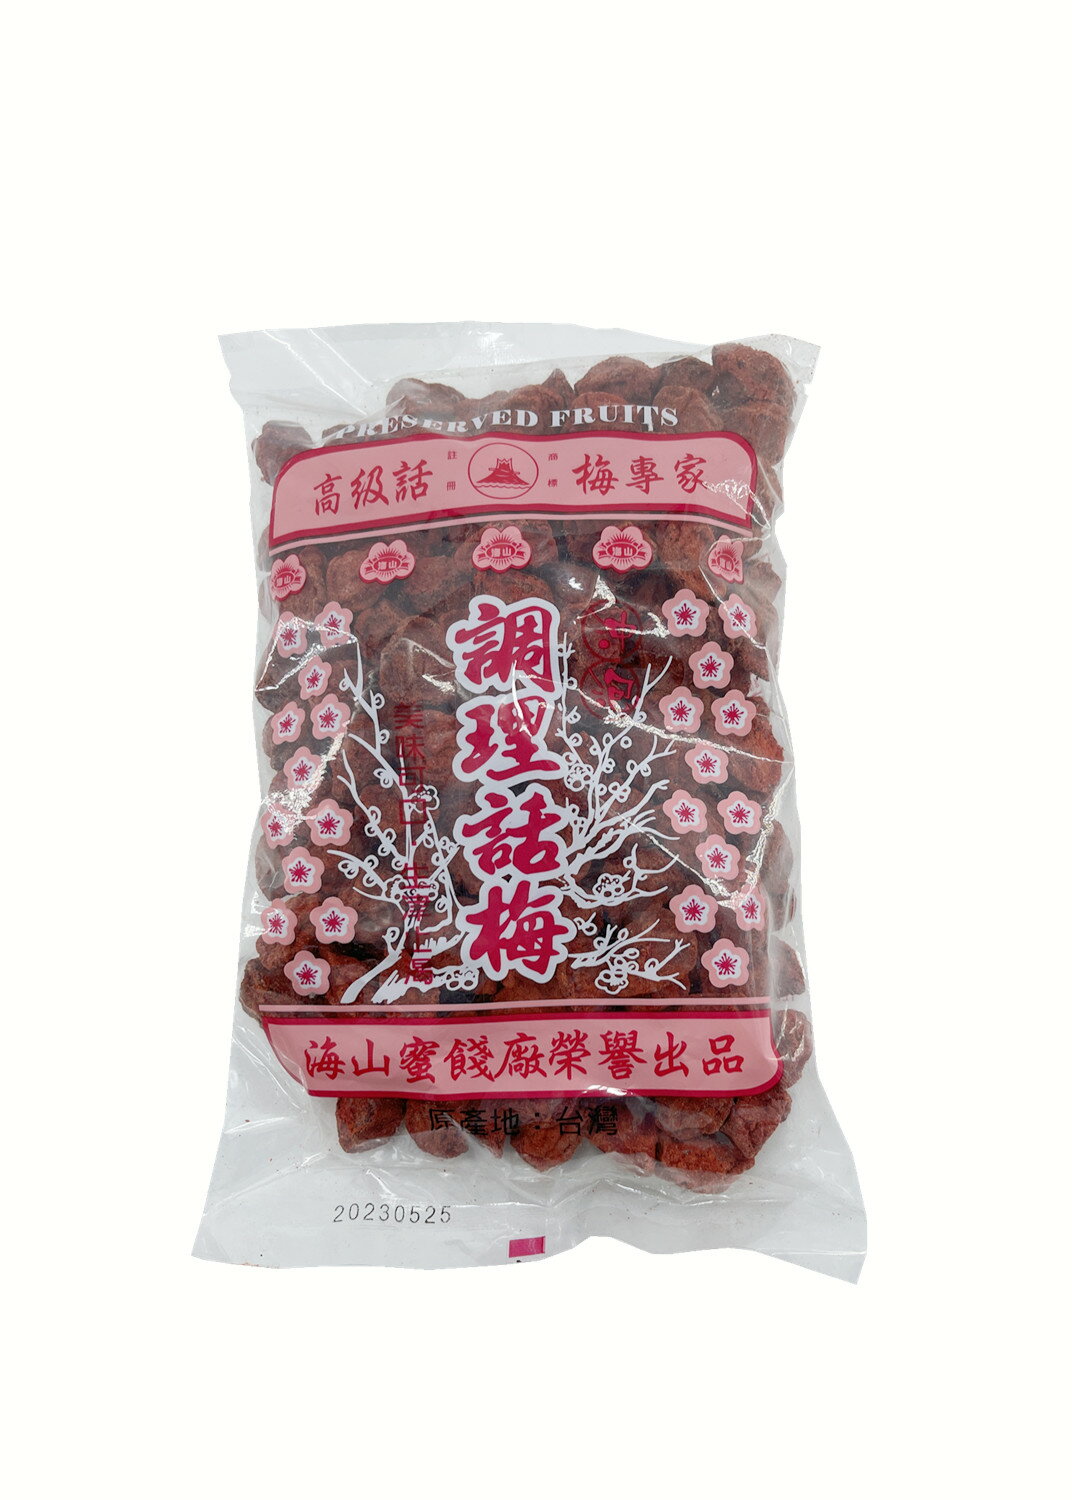 海山牌-調理話梅(500g)紅.白2種梅子粒沖泡飲料梅子綠茶經濟包上庄話梅